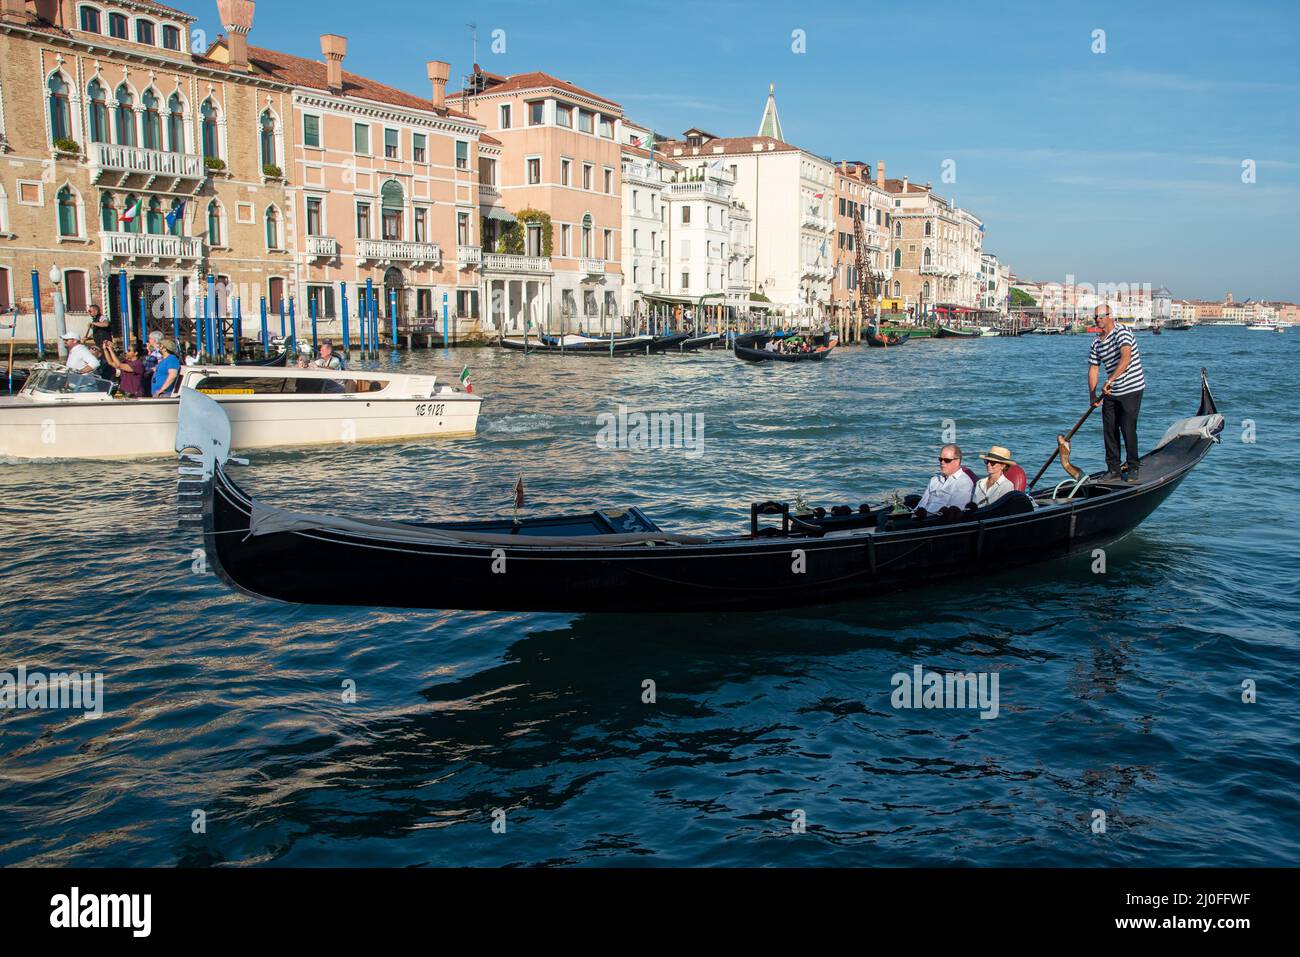 Venedig Stadtbild mit Grand Canal Wasserstraße, Gondoliere auf Gondel transportiert Menschen Stockfoto